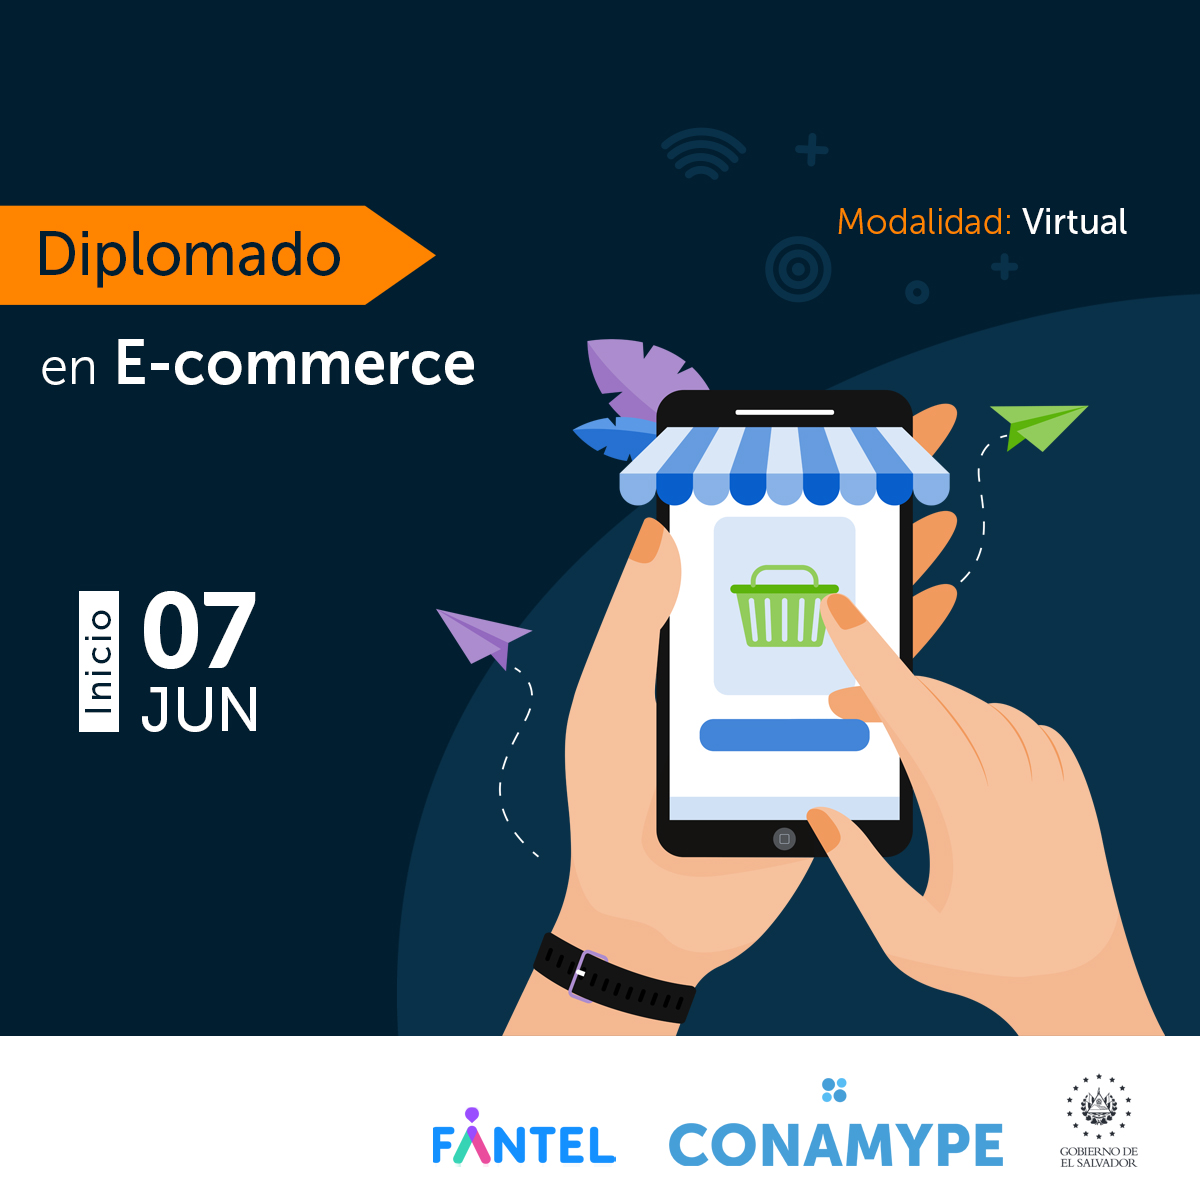 Diplomado en E-commerce